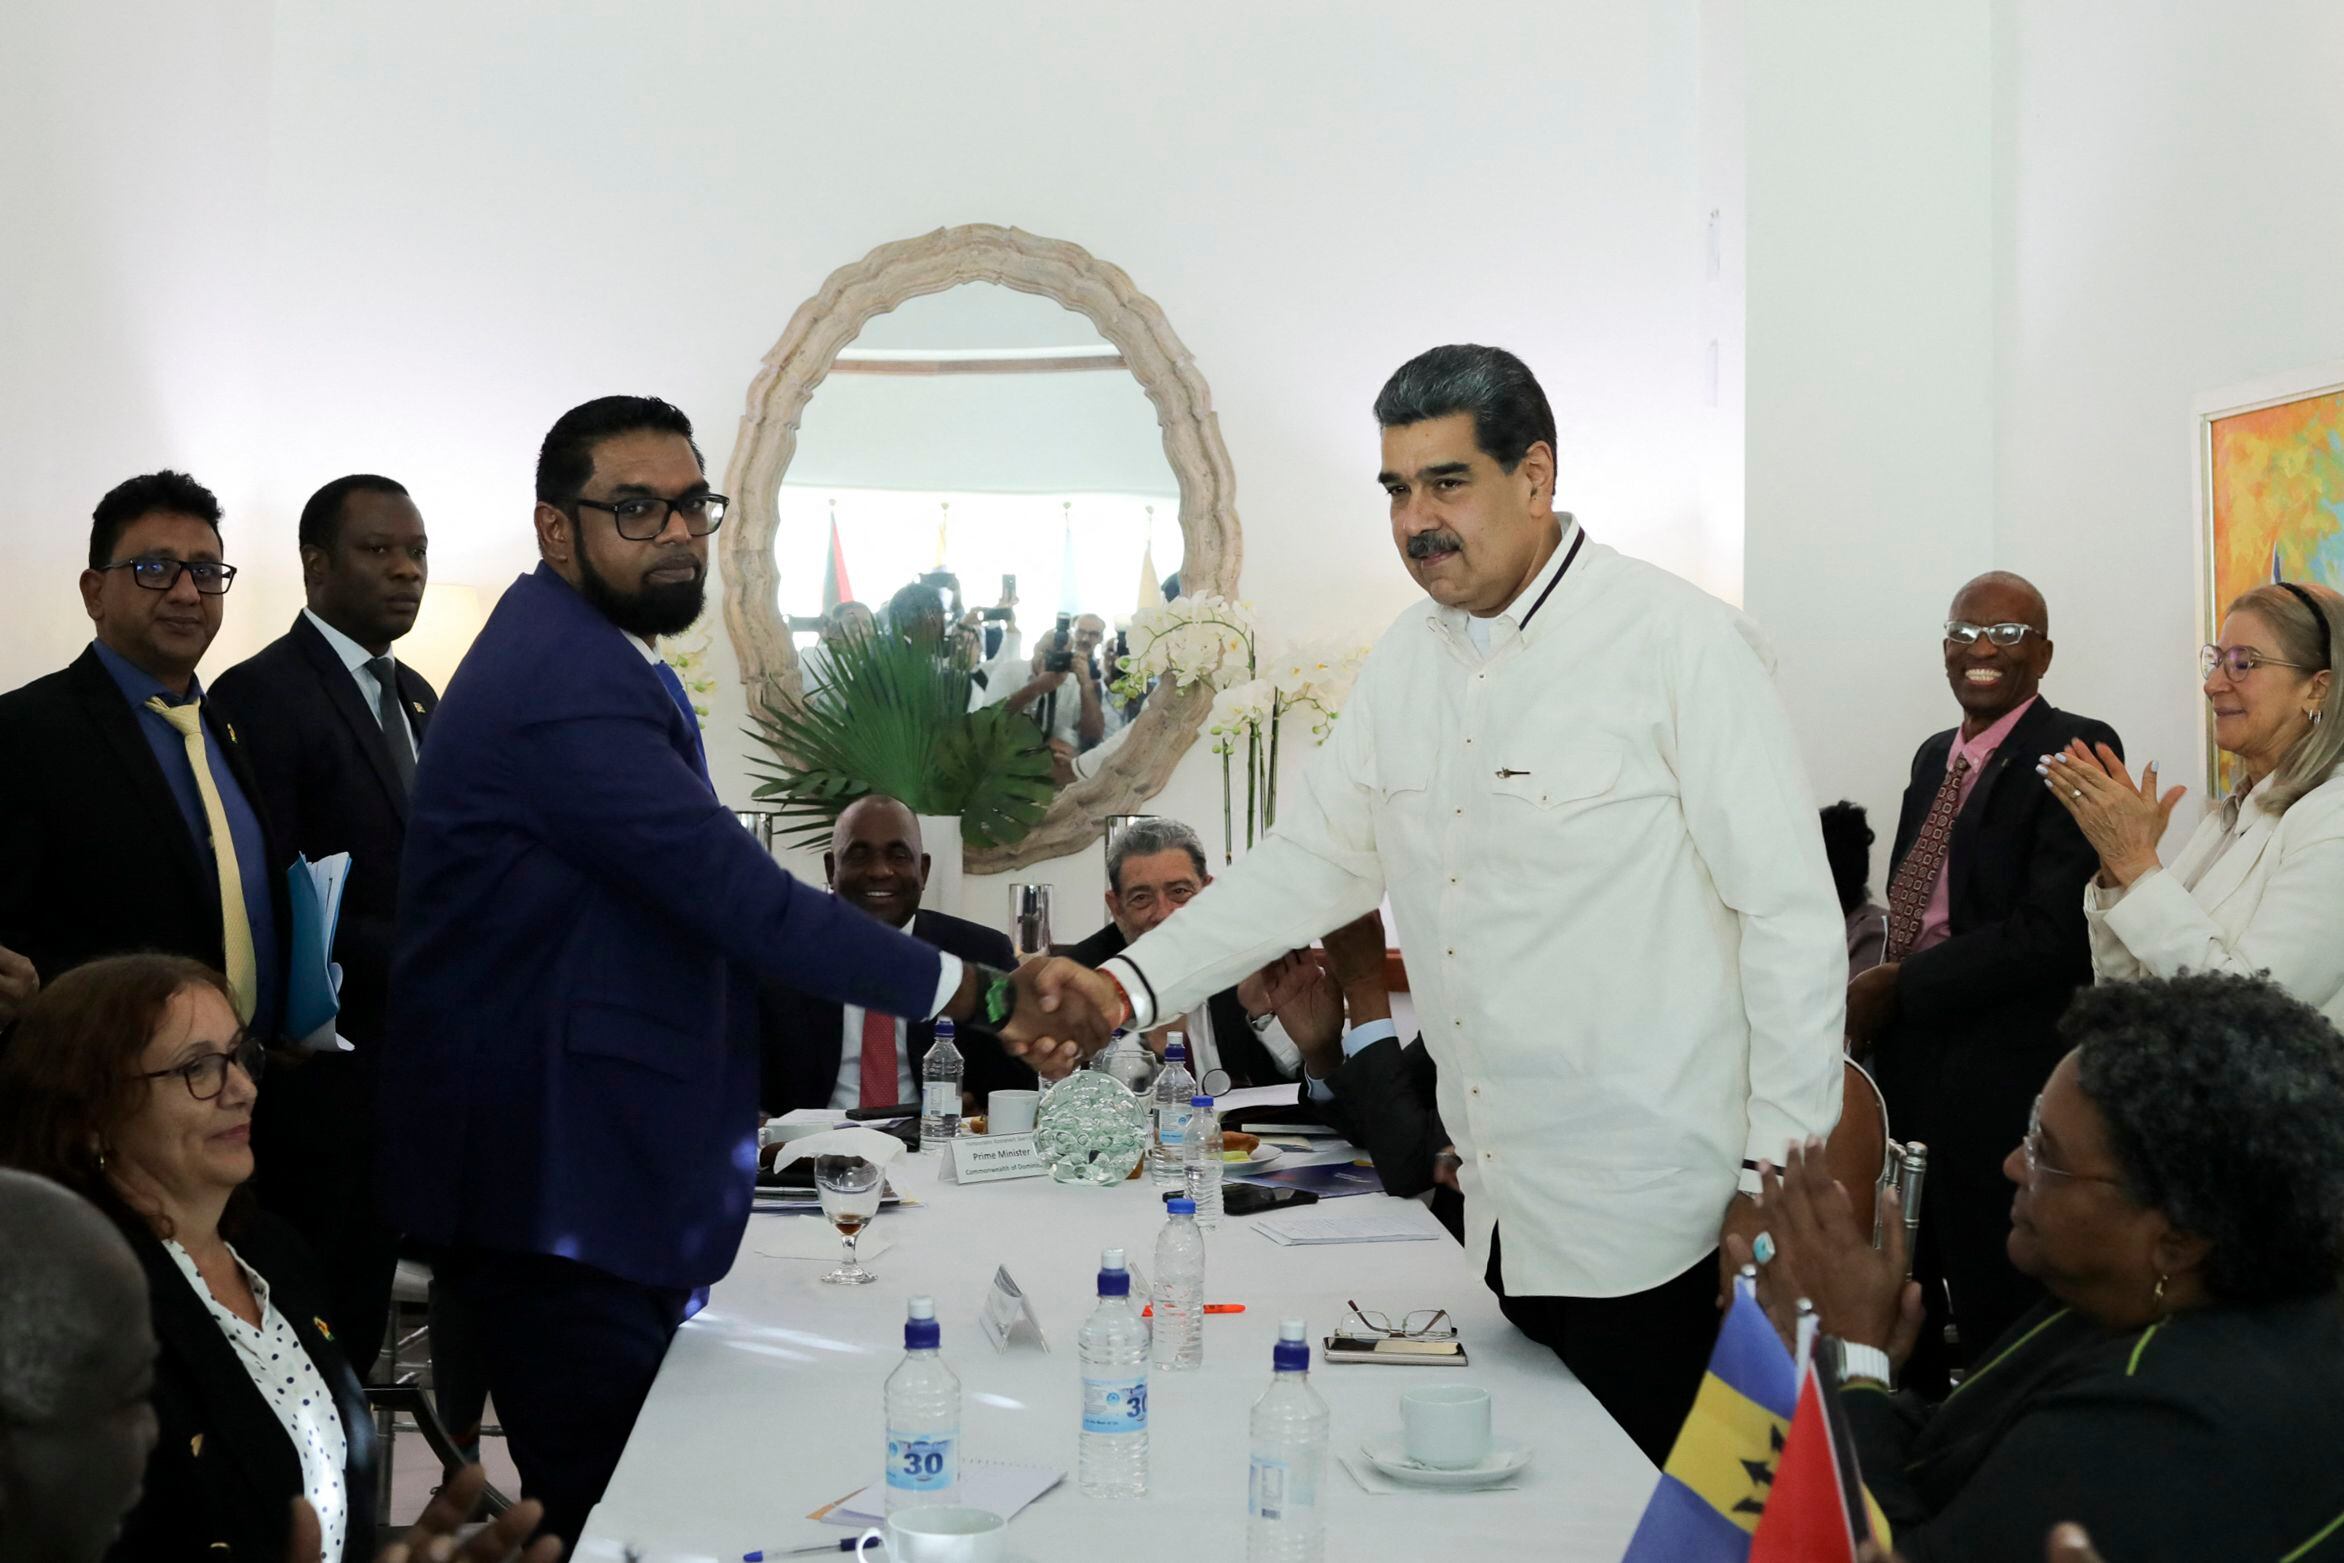 El presidente de Venezuela, Nicolás Maduro, y el presidente de Guyana, Irfaan Ali, prometieron en diciembre que no utilizarían la fuerza para resolver el conflicto del Esequibo